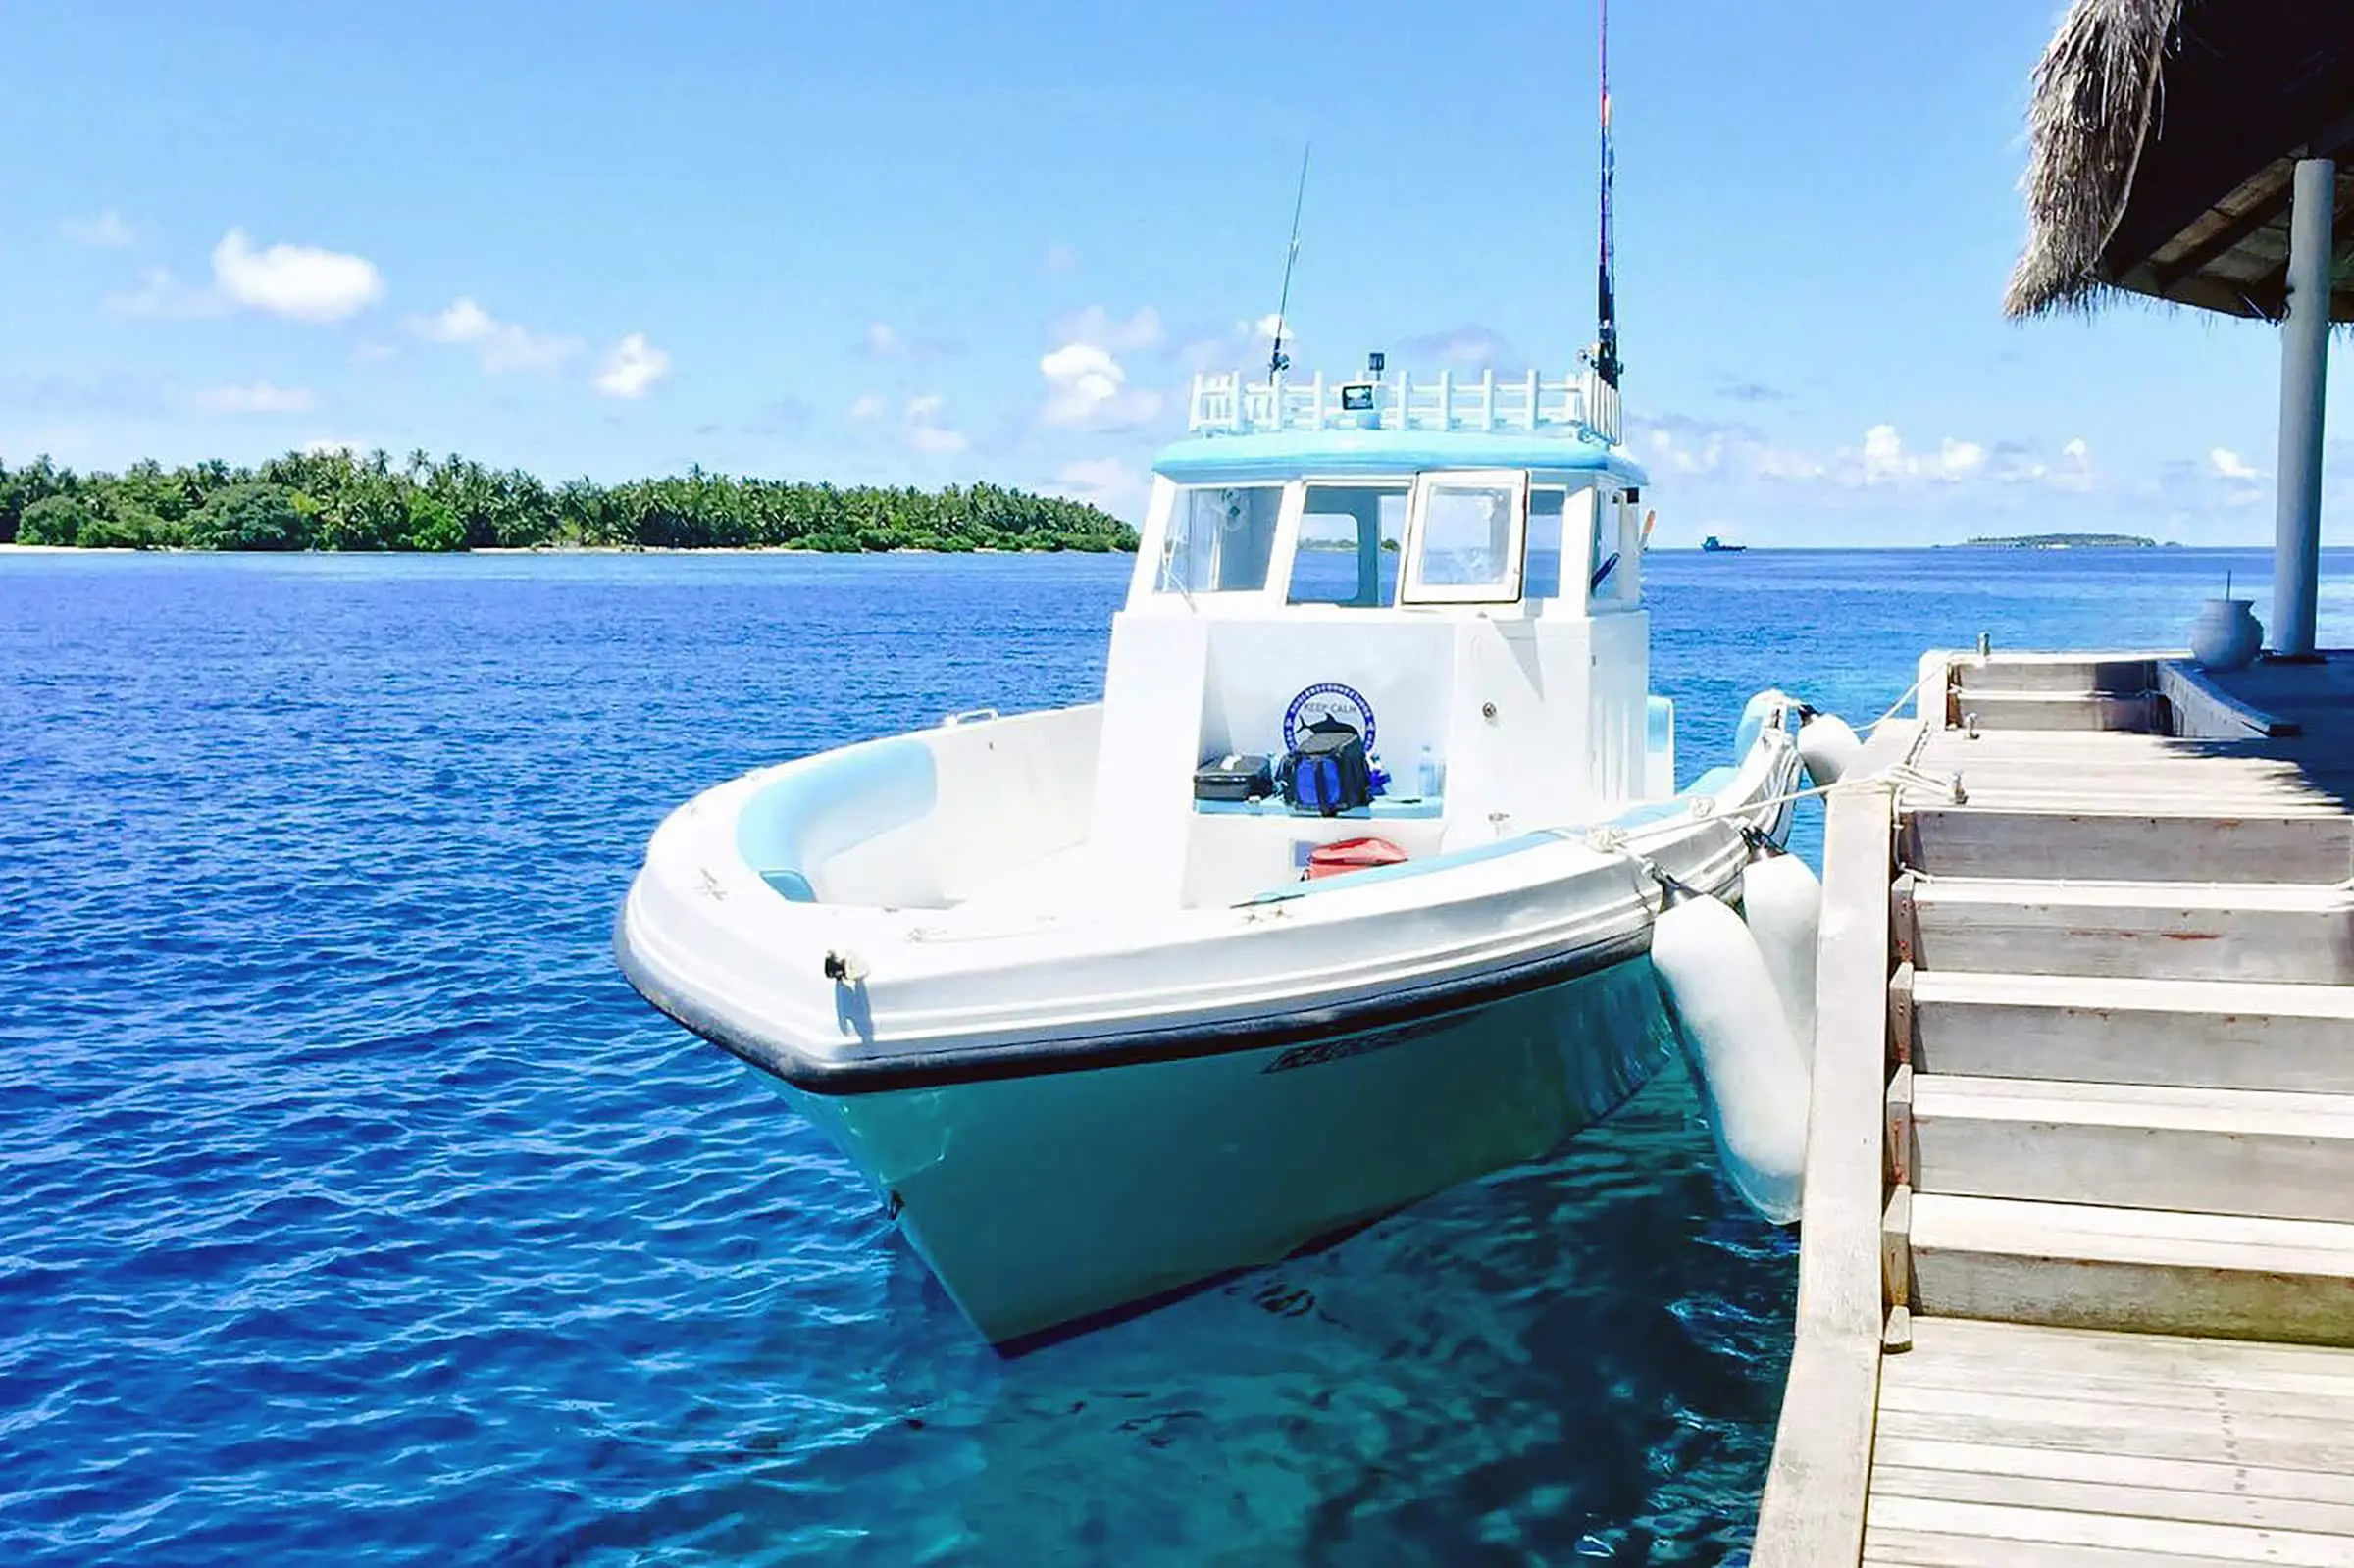 31 foot Gulf Craft Maldives Boat at Jetty